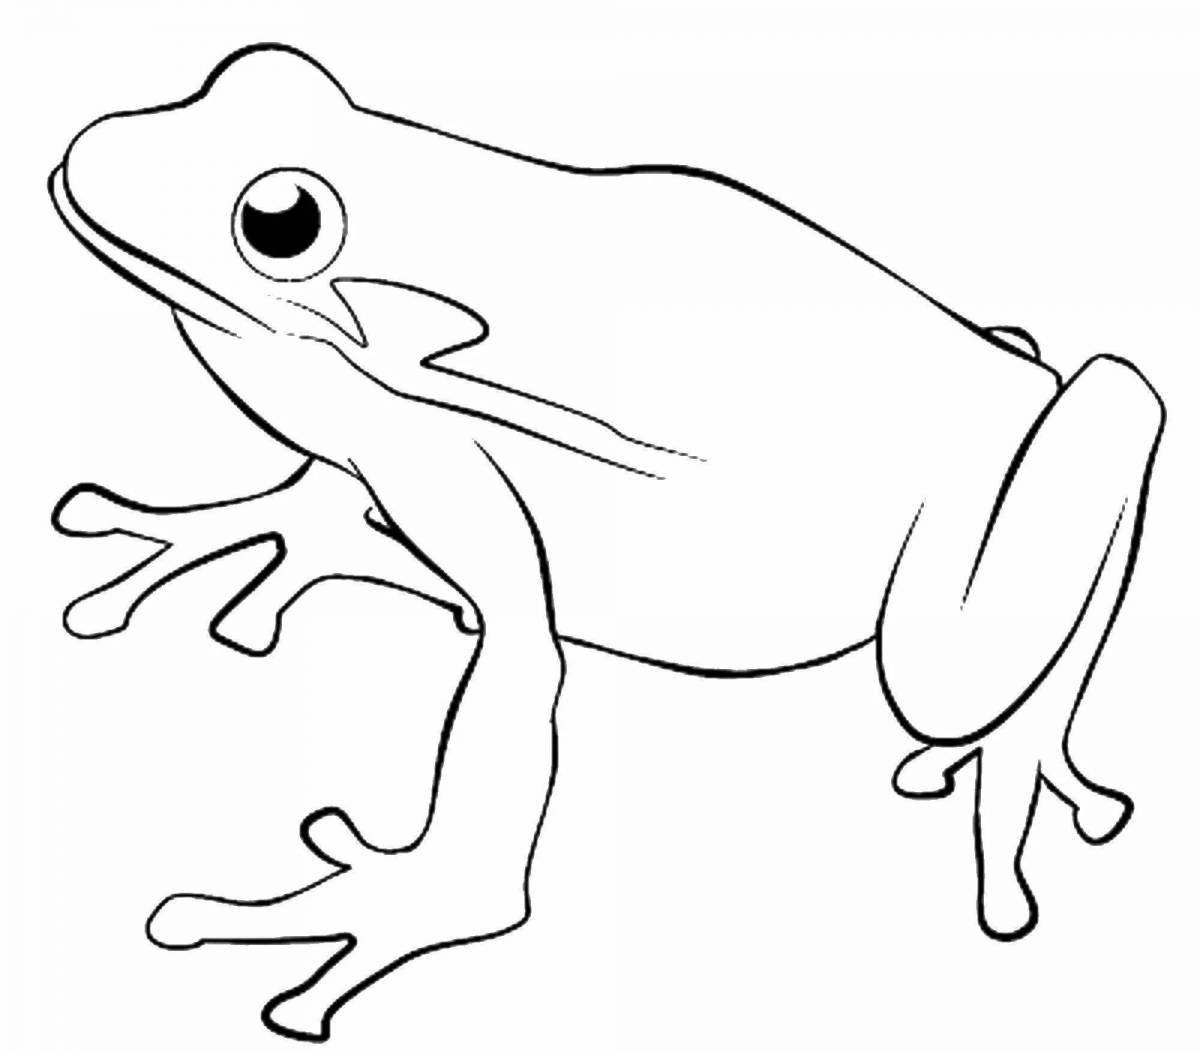 Coloring book outgoing cartoon frog